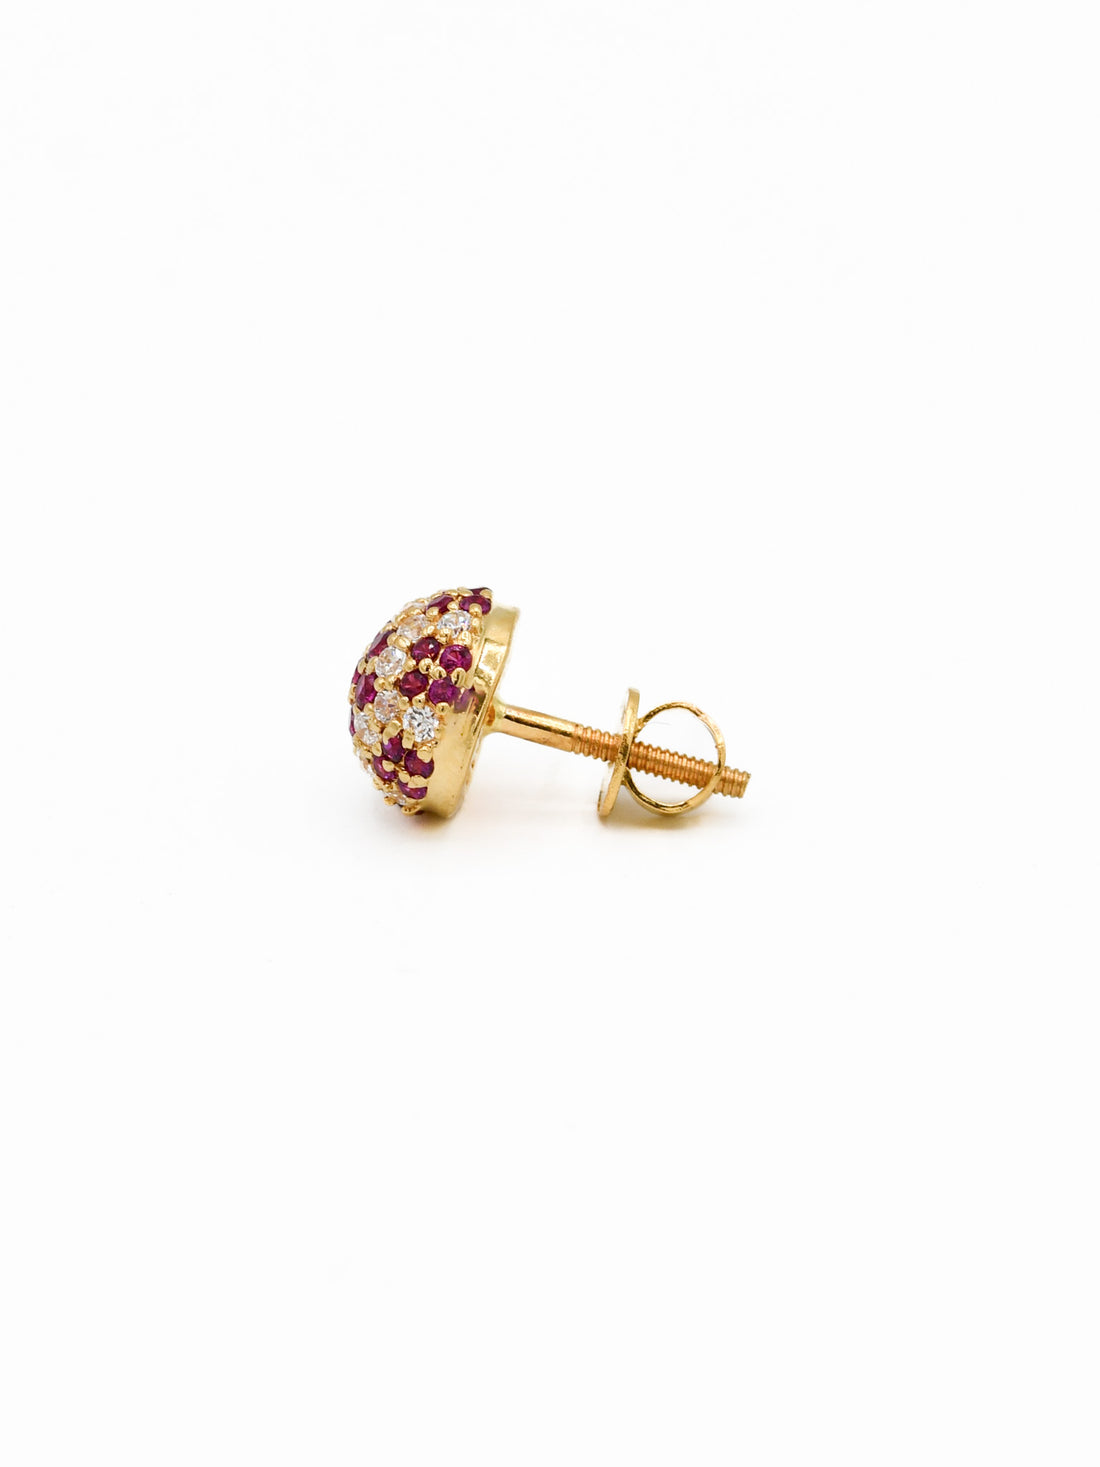 22ct Gold Pink CZ Stud Earrings - Roop Darshan